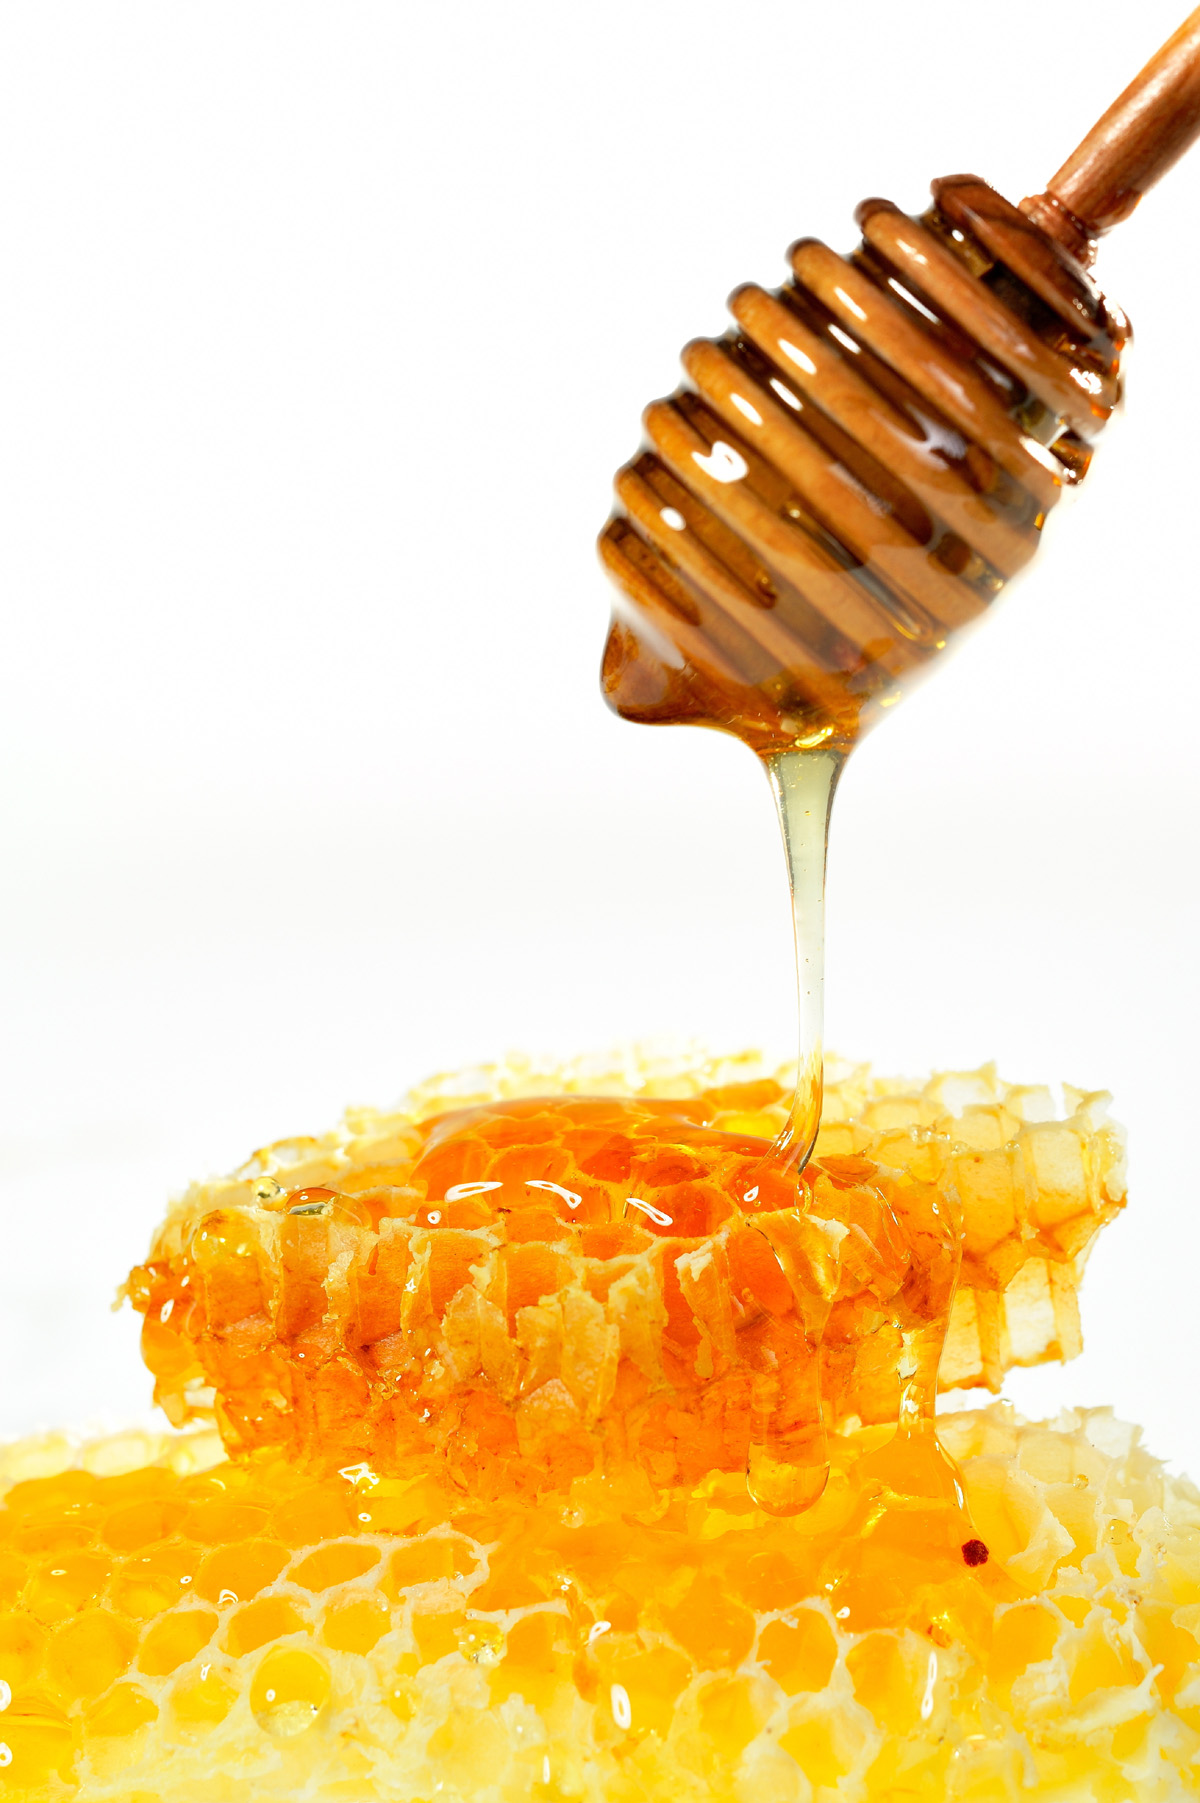 〓 高清晰蜂蜜蜂巢图蜂浆片壁纸:当前为类型:欧